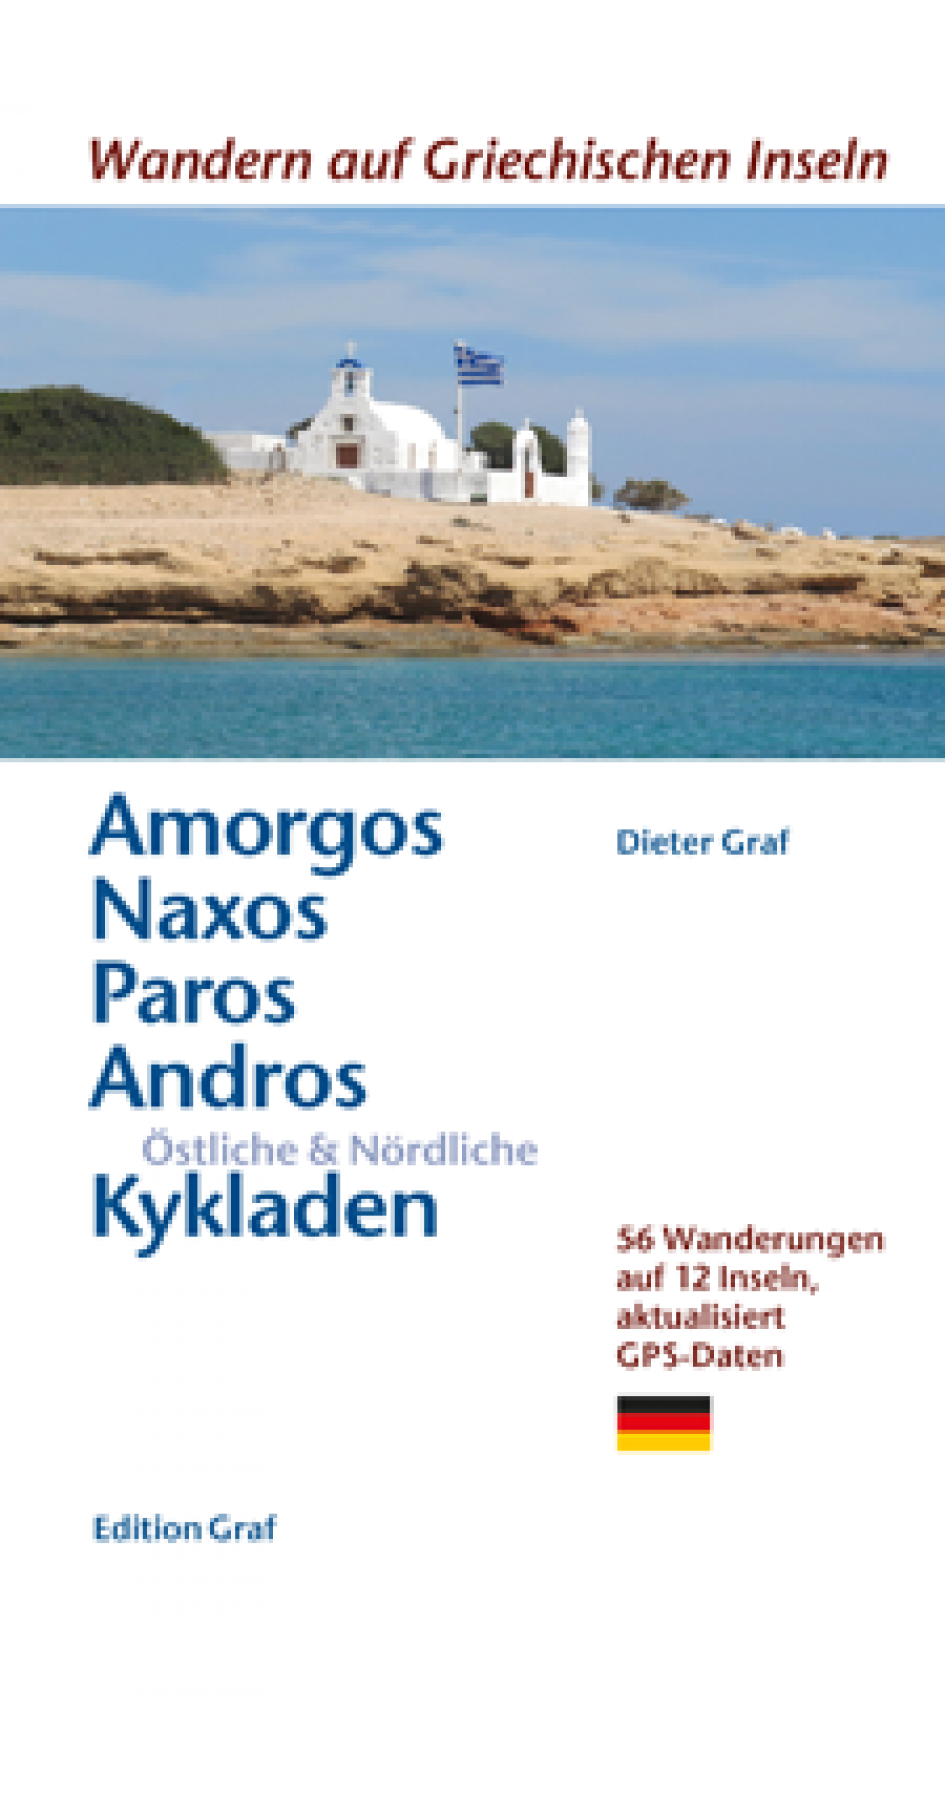 Amorgos, Naxos, Paros, Andros Ostliche & Nordliche Kykladen, Dieter Graf (German)